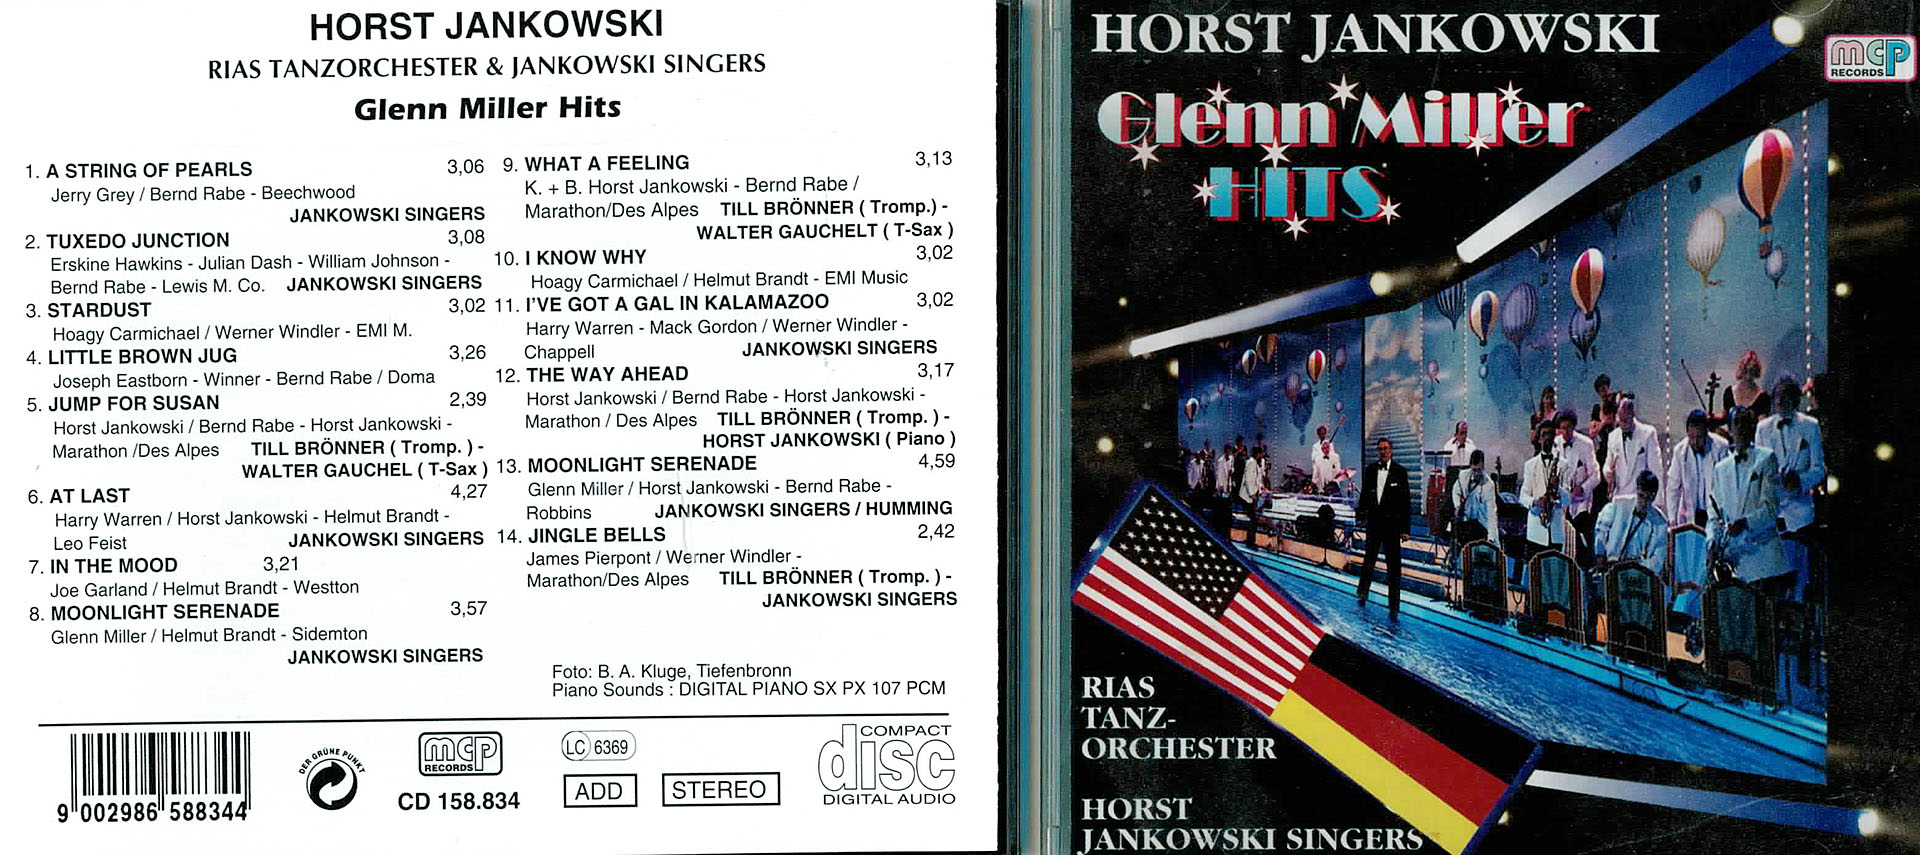 Glenn Miller Hits - Horst Jankowski